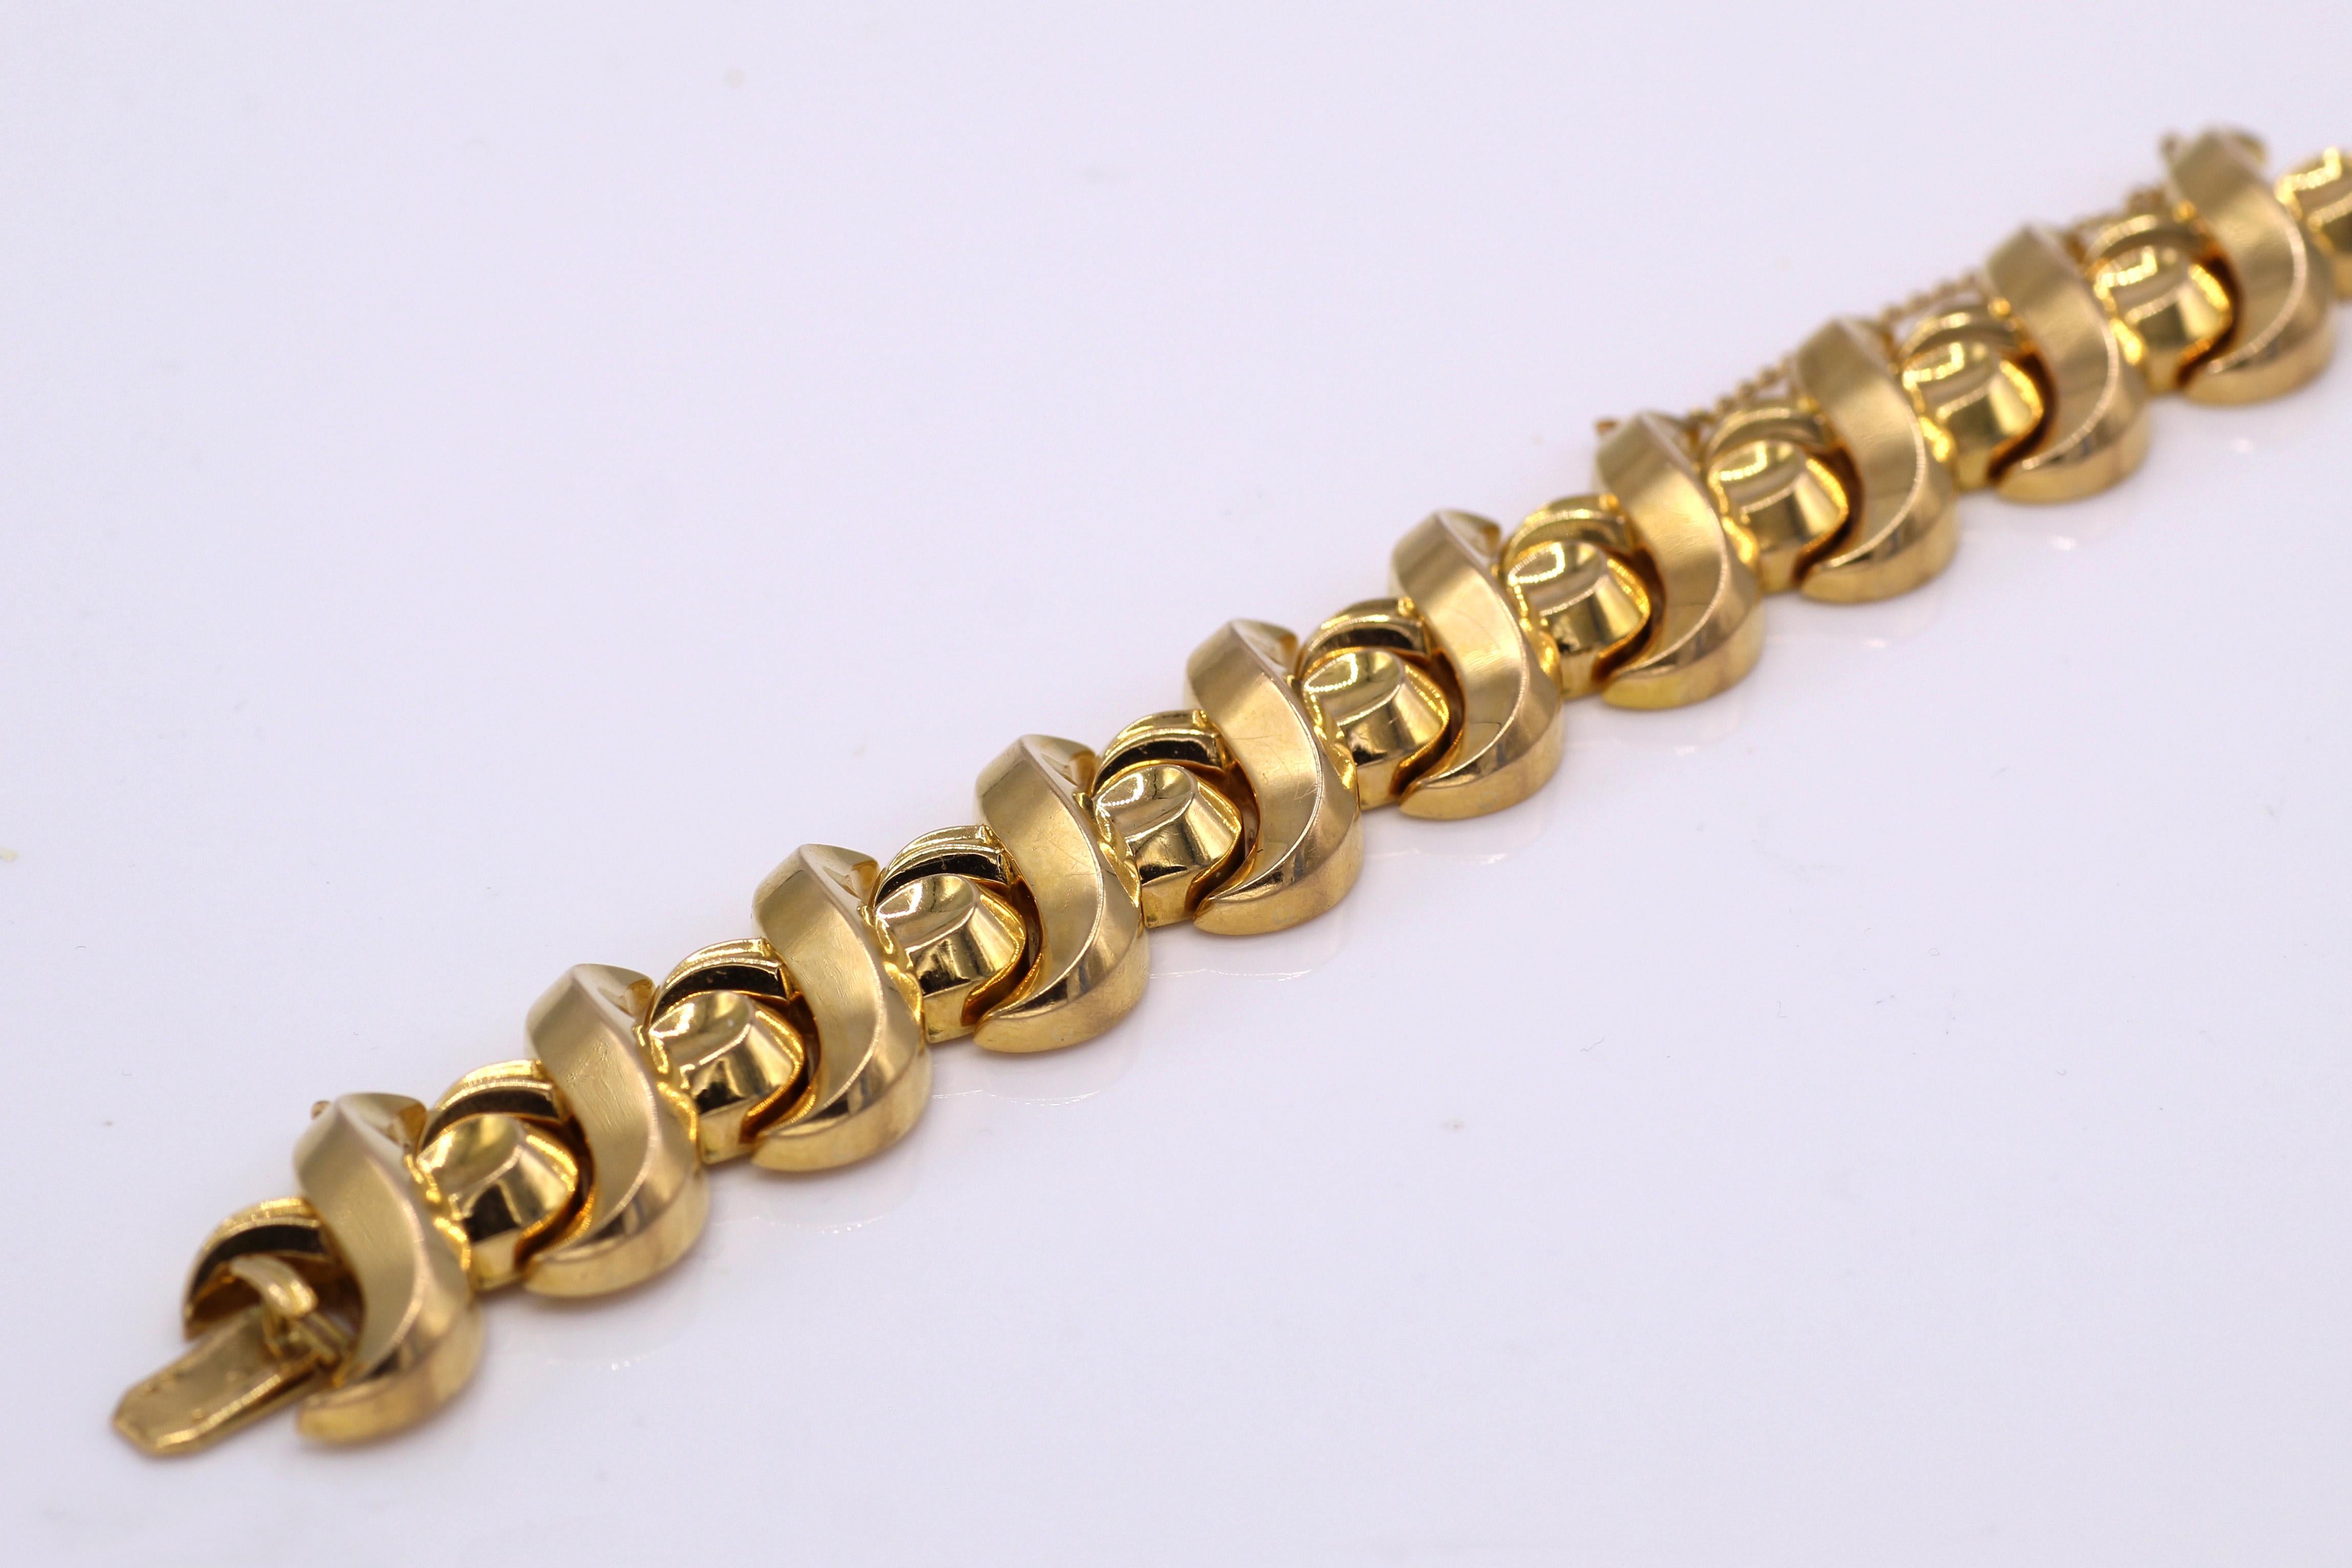 Französisches Gliederarmband aus 18 Karat Gelbgold von ca. 1945. Dieses kühne und schicke Retro-Armband hat ein wunderschönes dreidimensionales Design und ist ein einzigartiges und gewagtes Accessoire. Französische Prüfzeichen und Herstellerzeichen